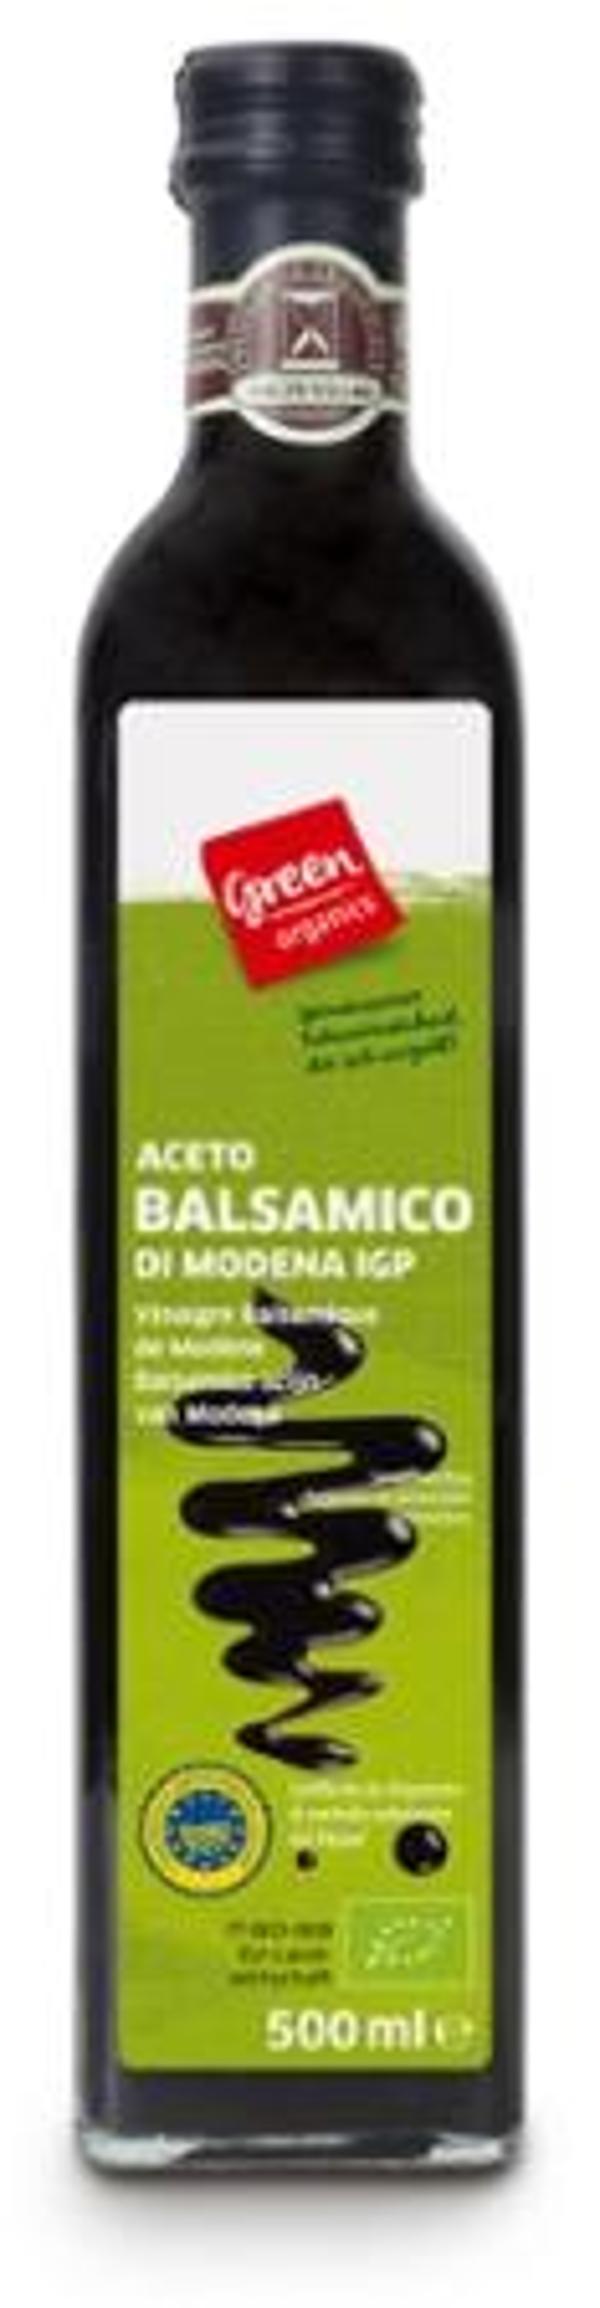 Produktfoto zu green Balsamico di Modena